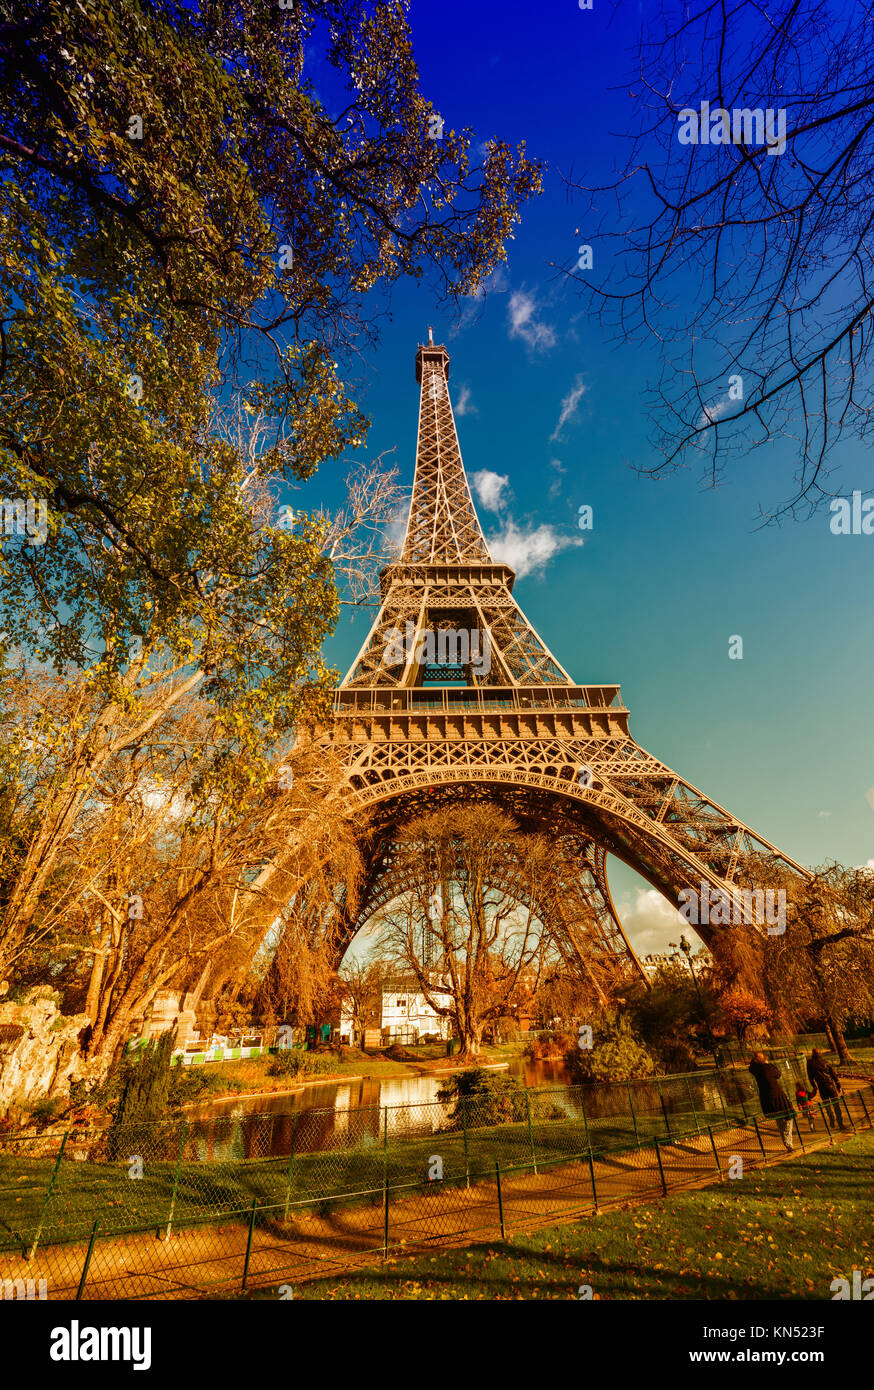 Spektakuläre Aussicht auf Tour Eiffel Struktur an einem schönen sonnigen Tag. Eiffelturm unter blauem Himmel, Paris. Stockfoto